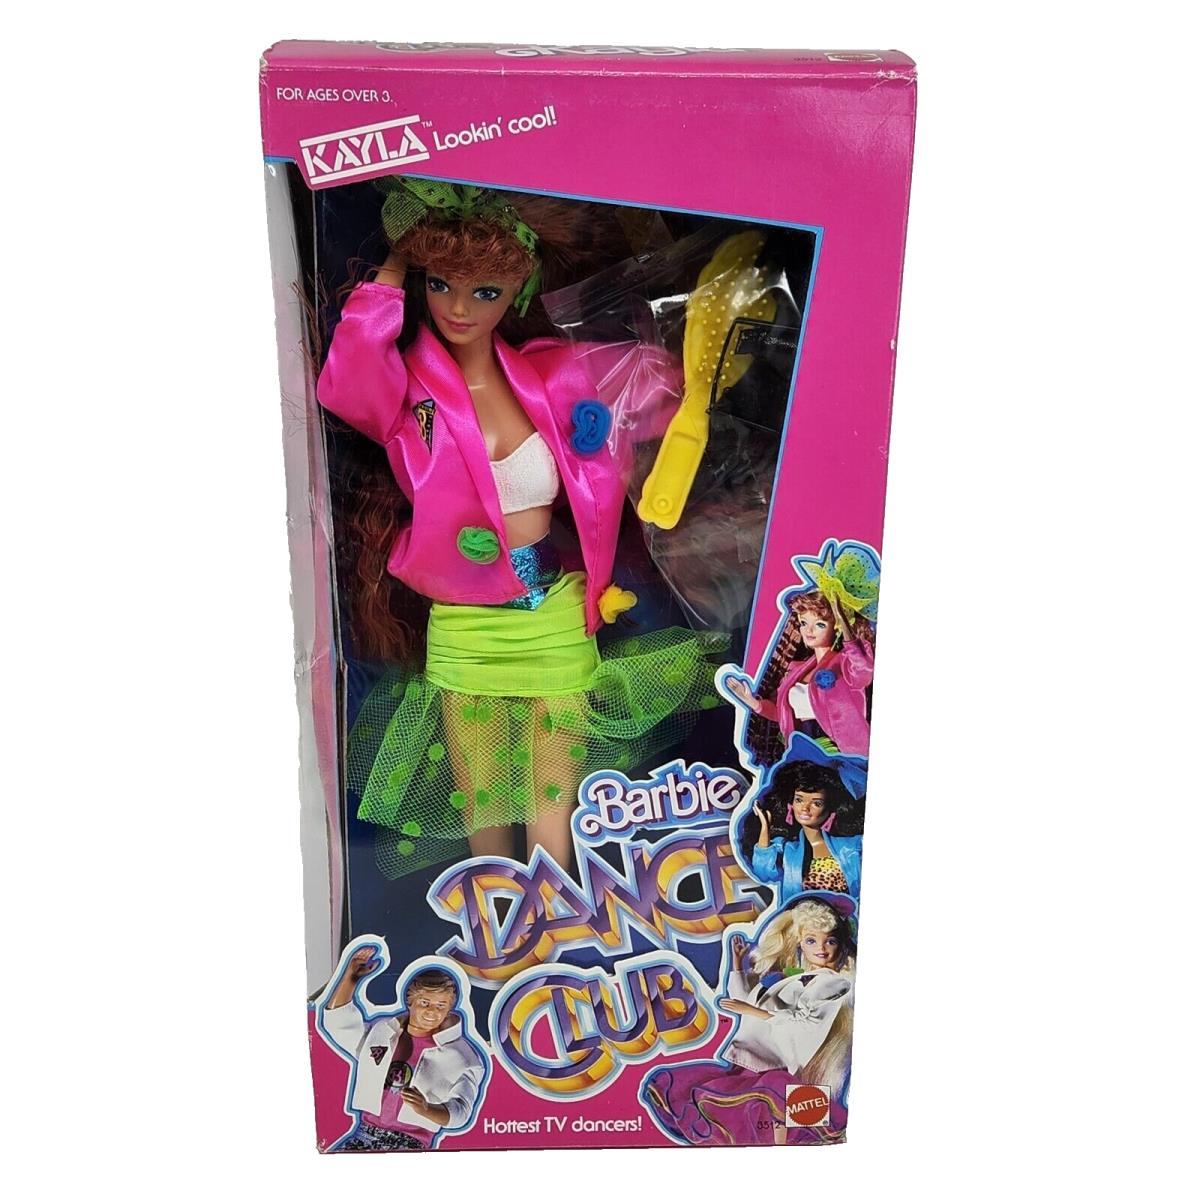 Vintage 1989 Kayla Lookin Cool Barbie Dance Club Doll 3512 Spots